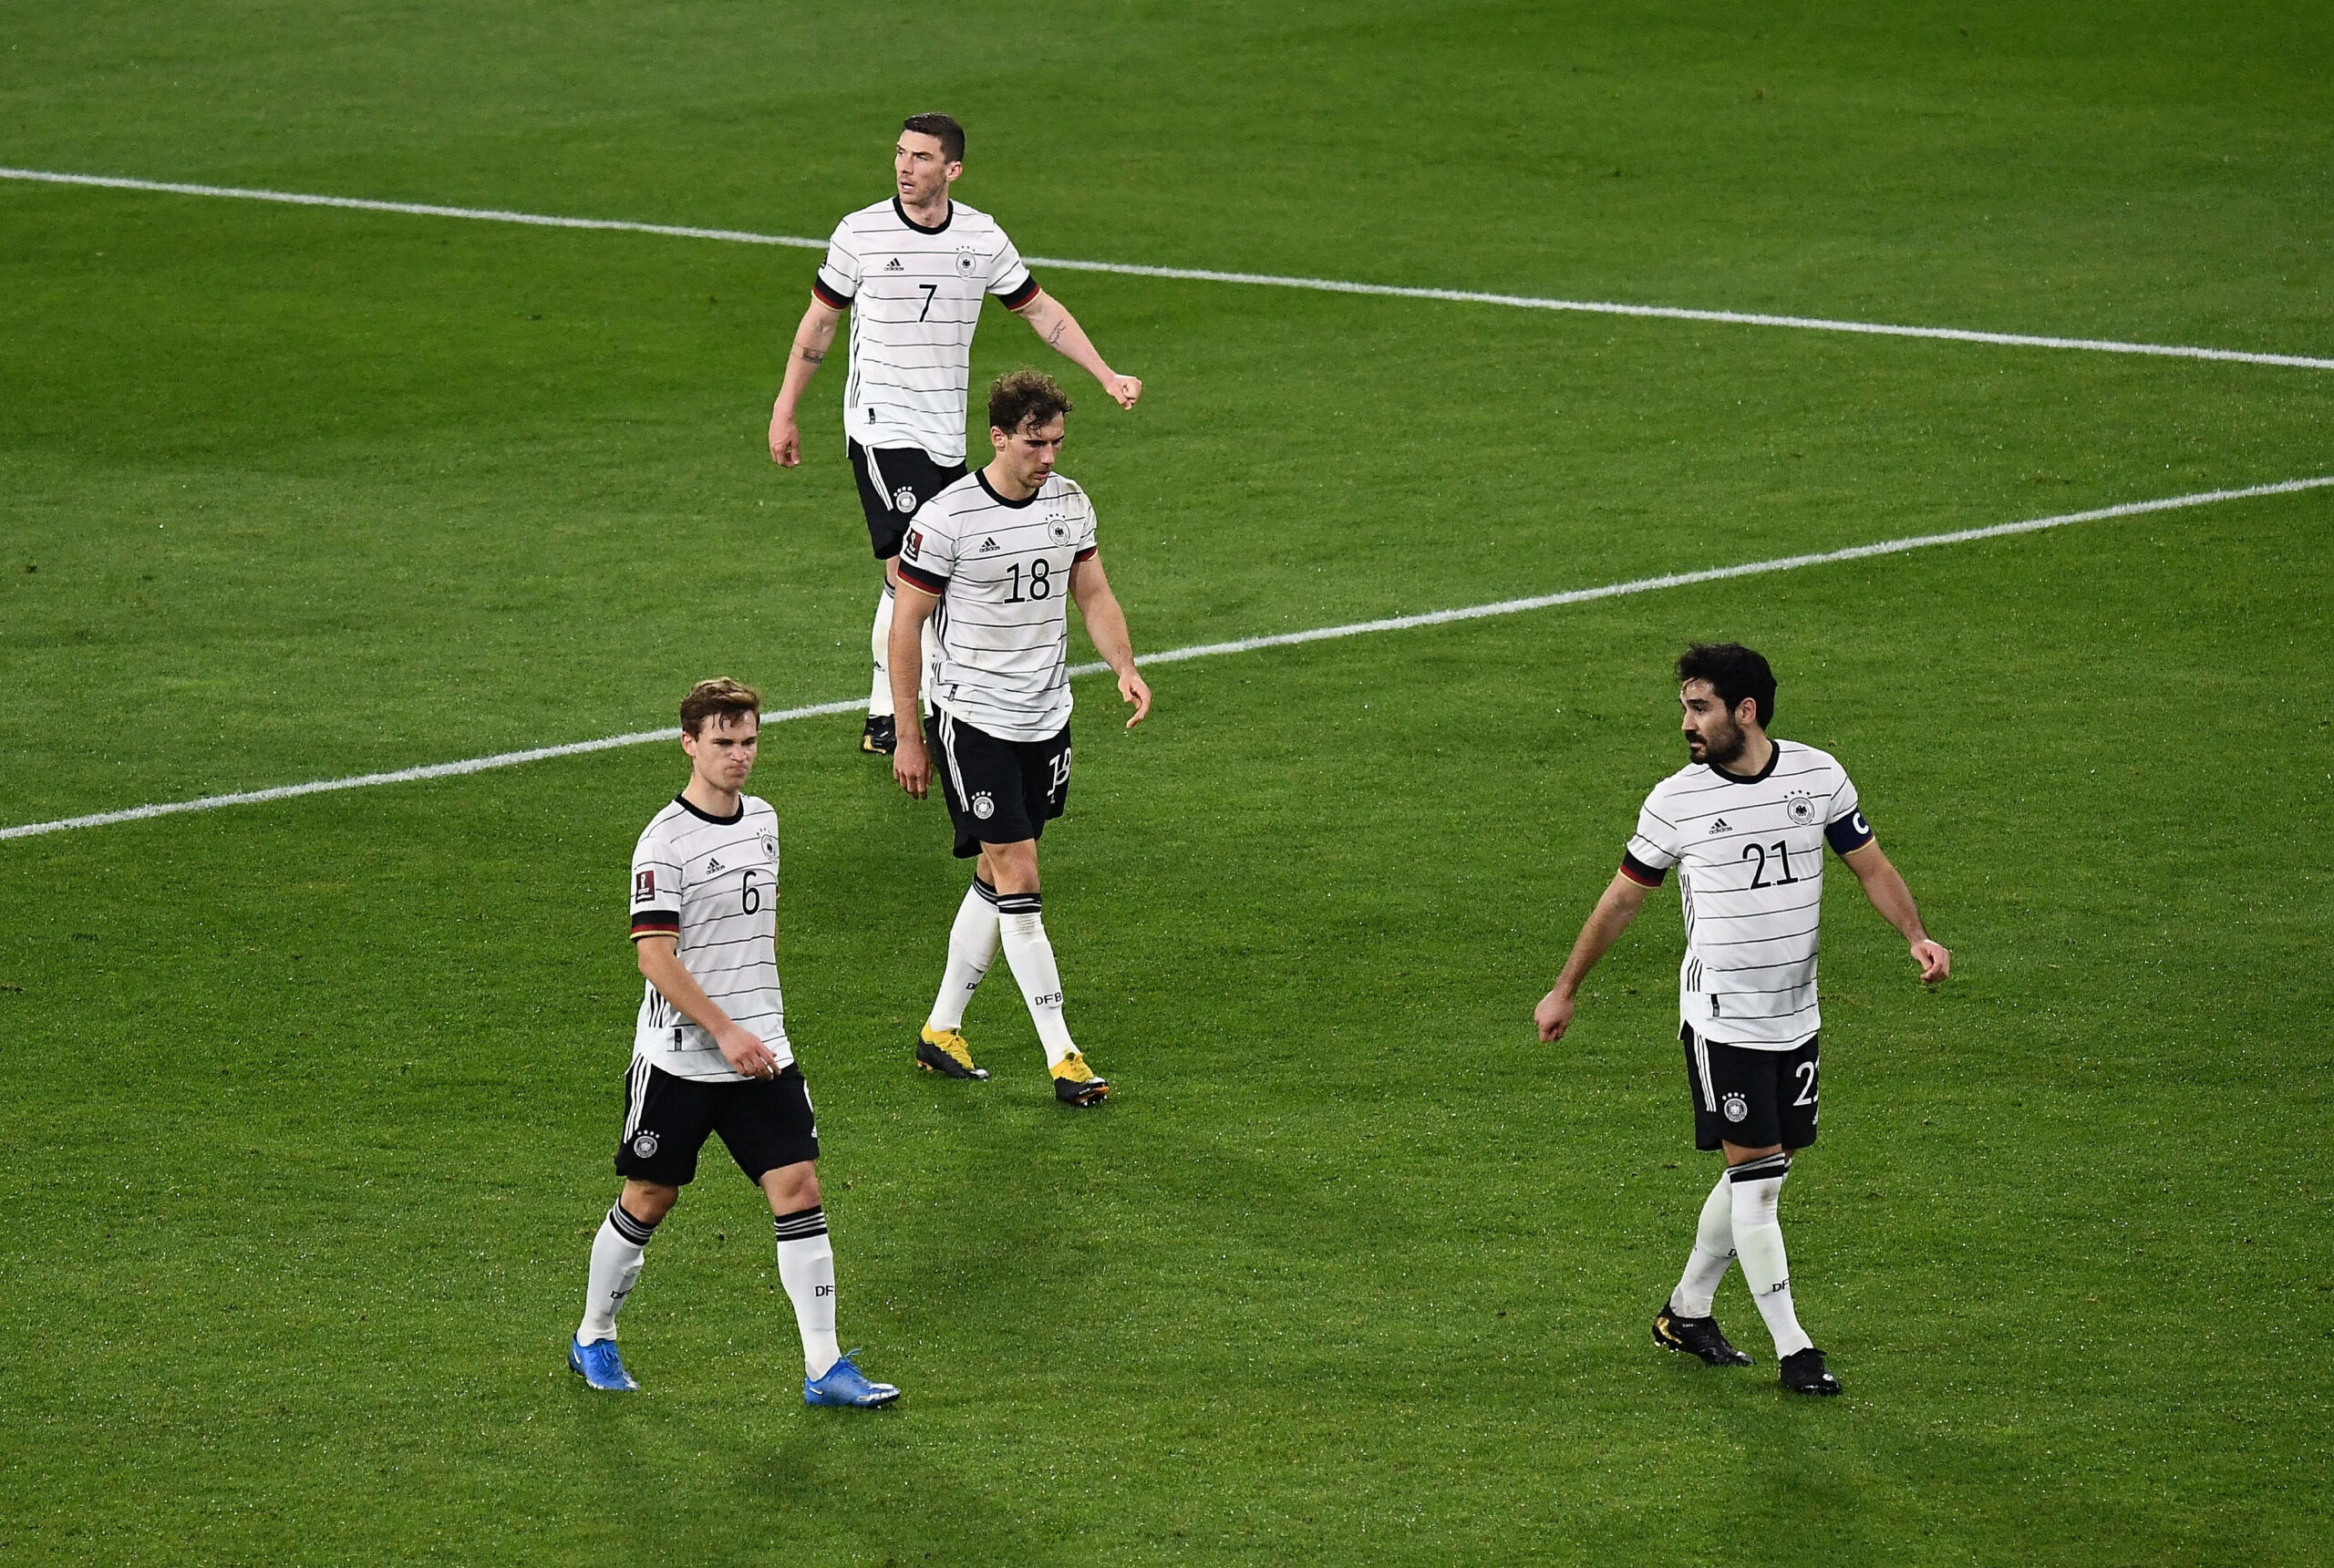 Joshua Kimmich, Leon Goretzka und Ilkay Gündogan in einem Spiel der DFB-Elf.